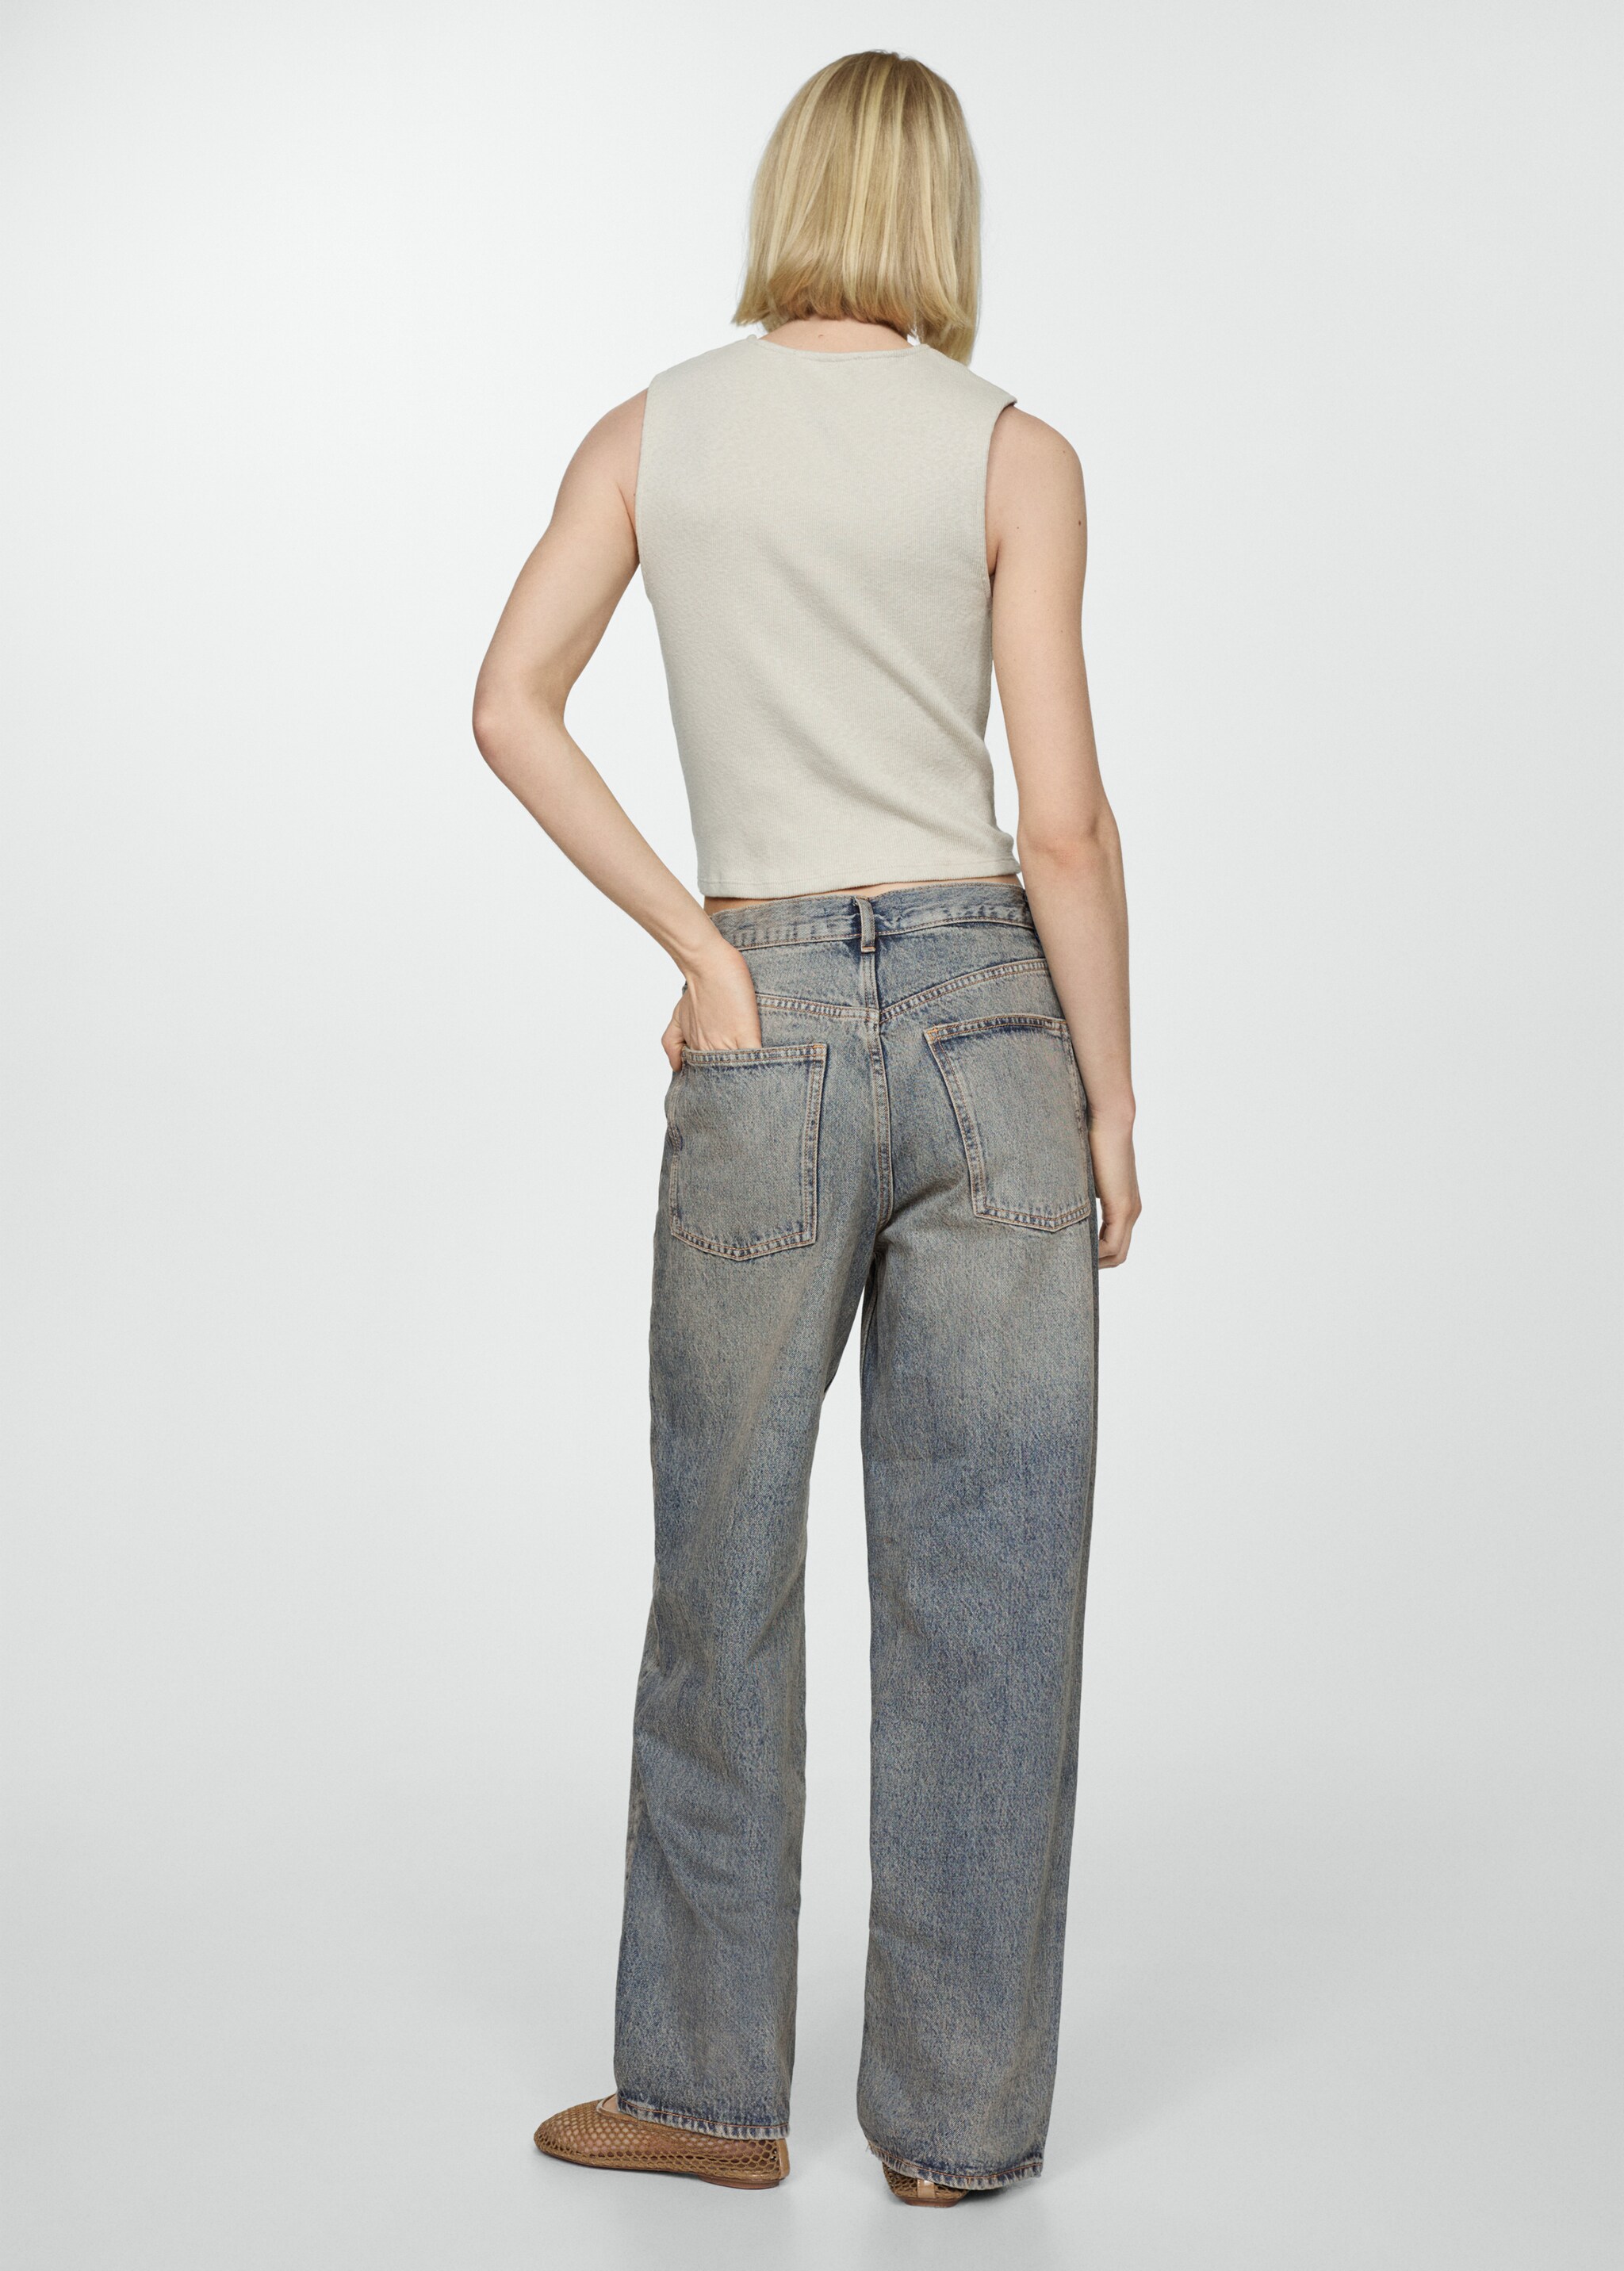 Orta bel wideleg jean pantolon - Ürünün arkası